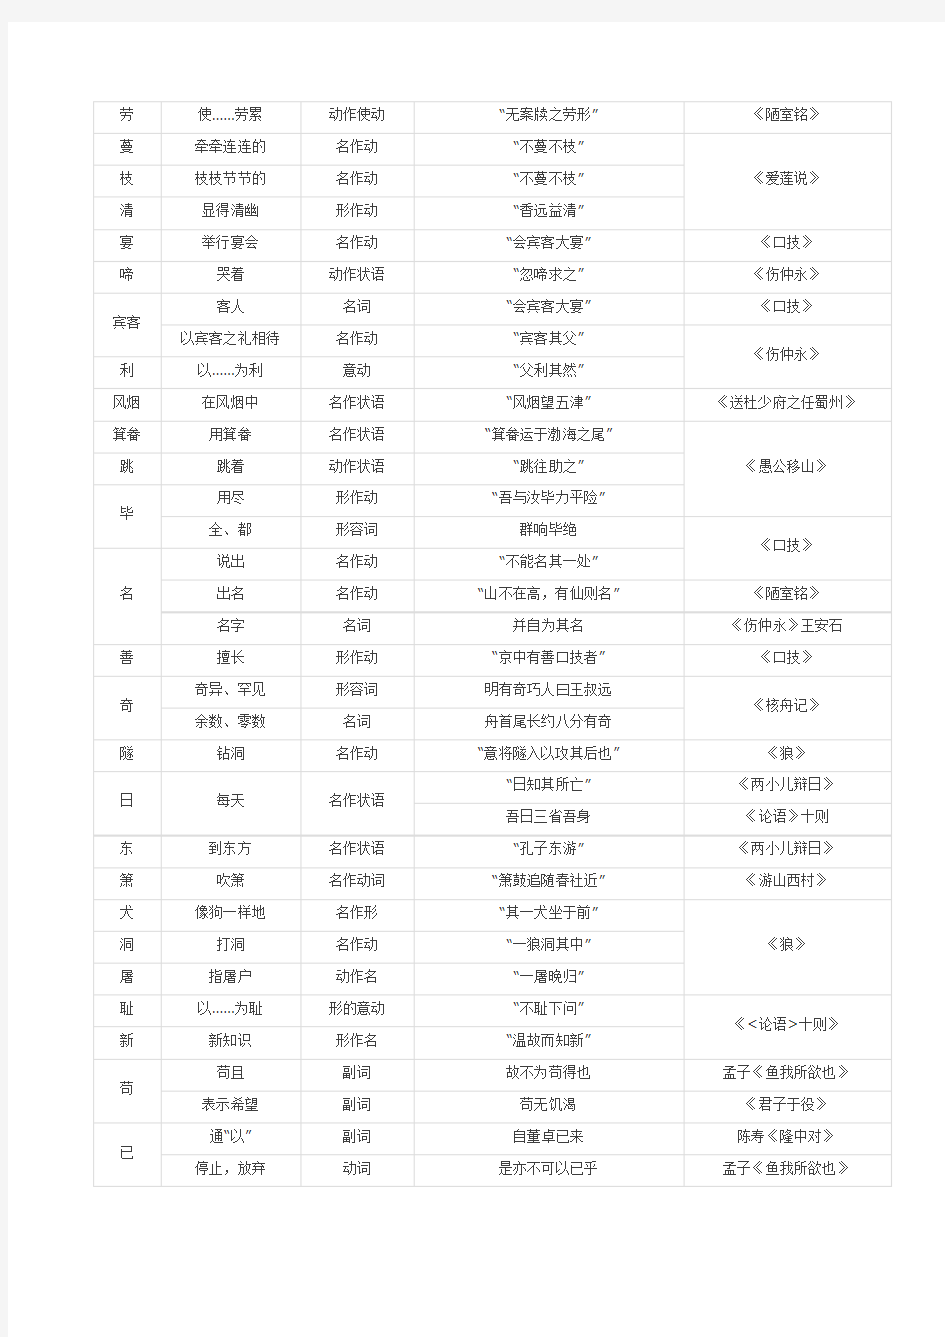 初中文言实词一览表